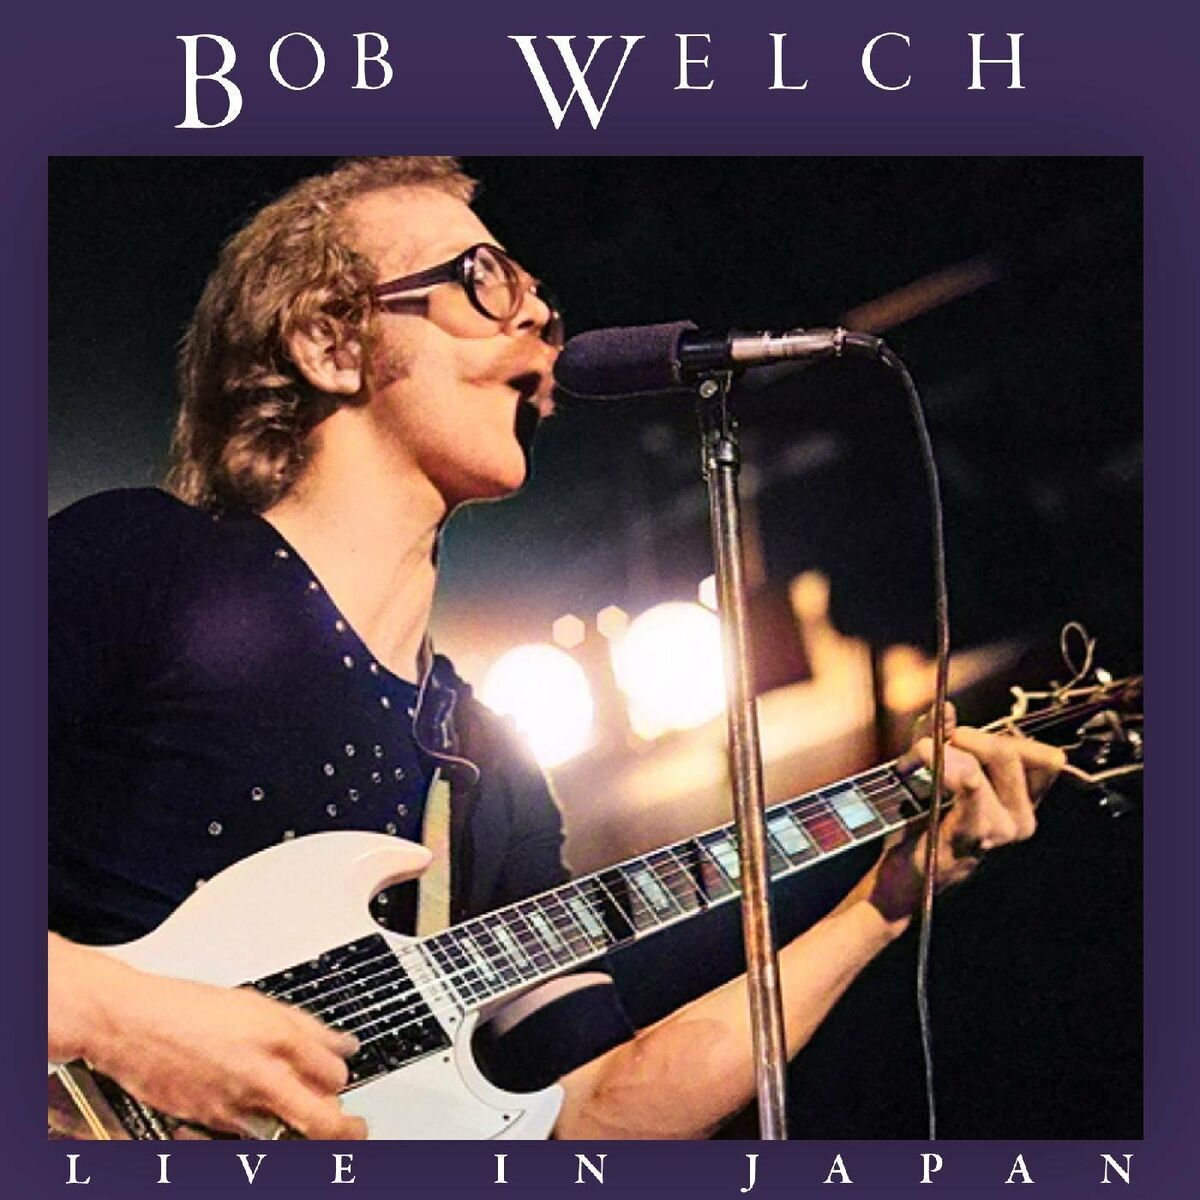 Bob Welch: albums